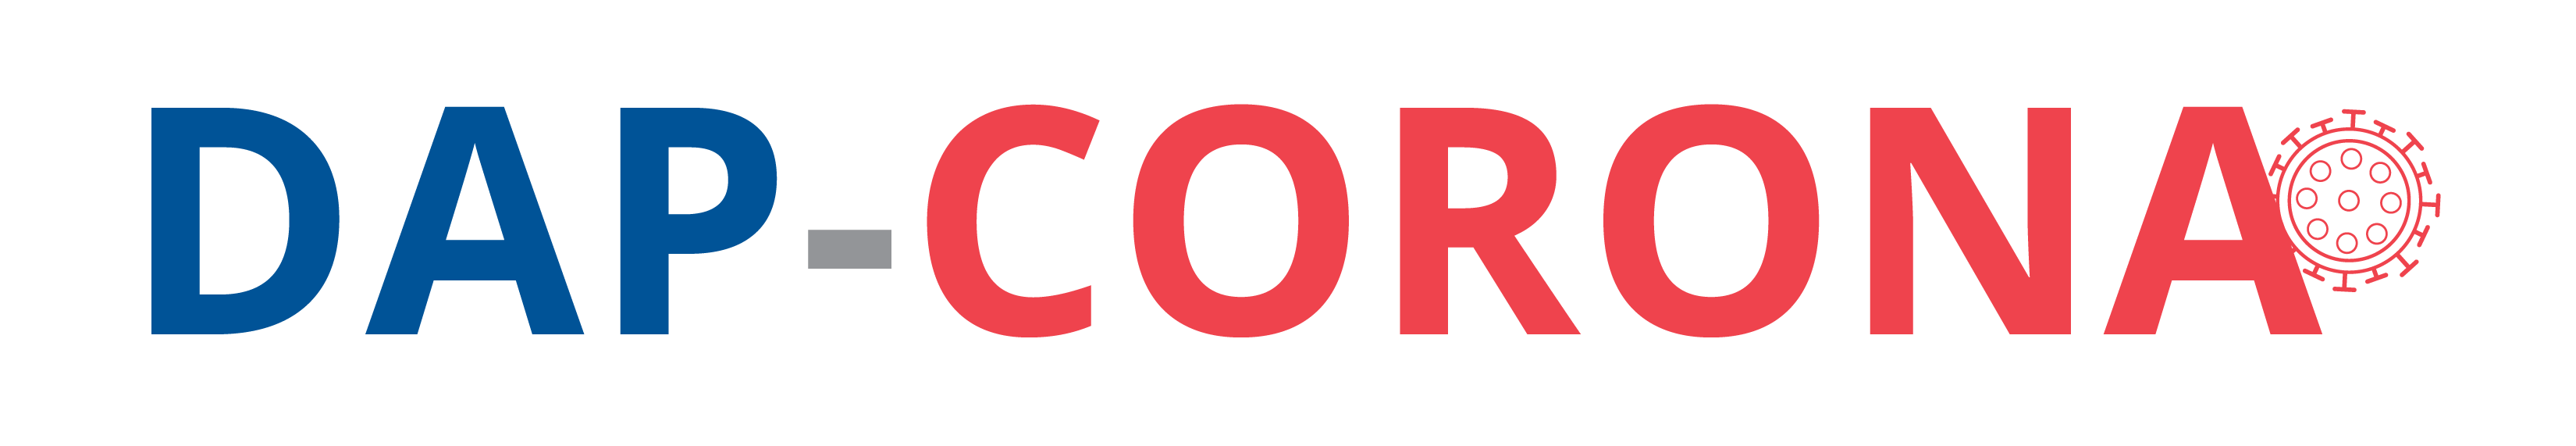 DAP-Corona